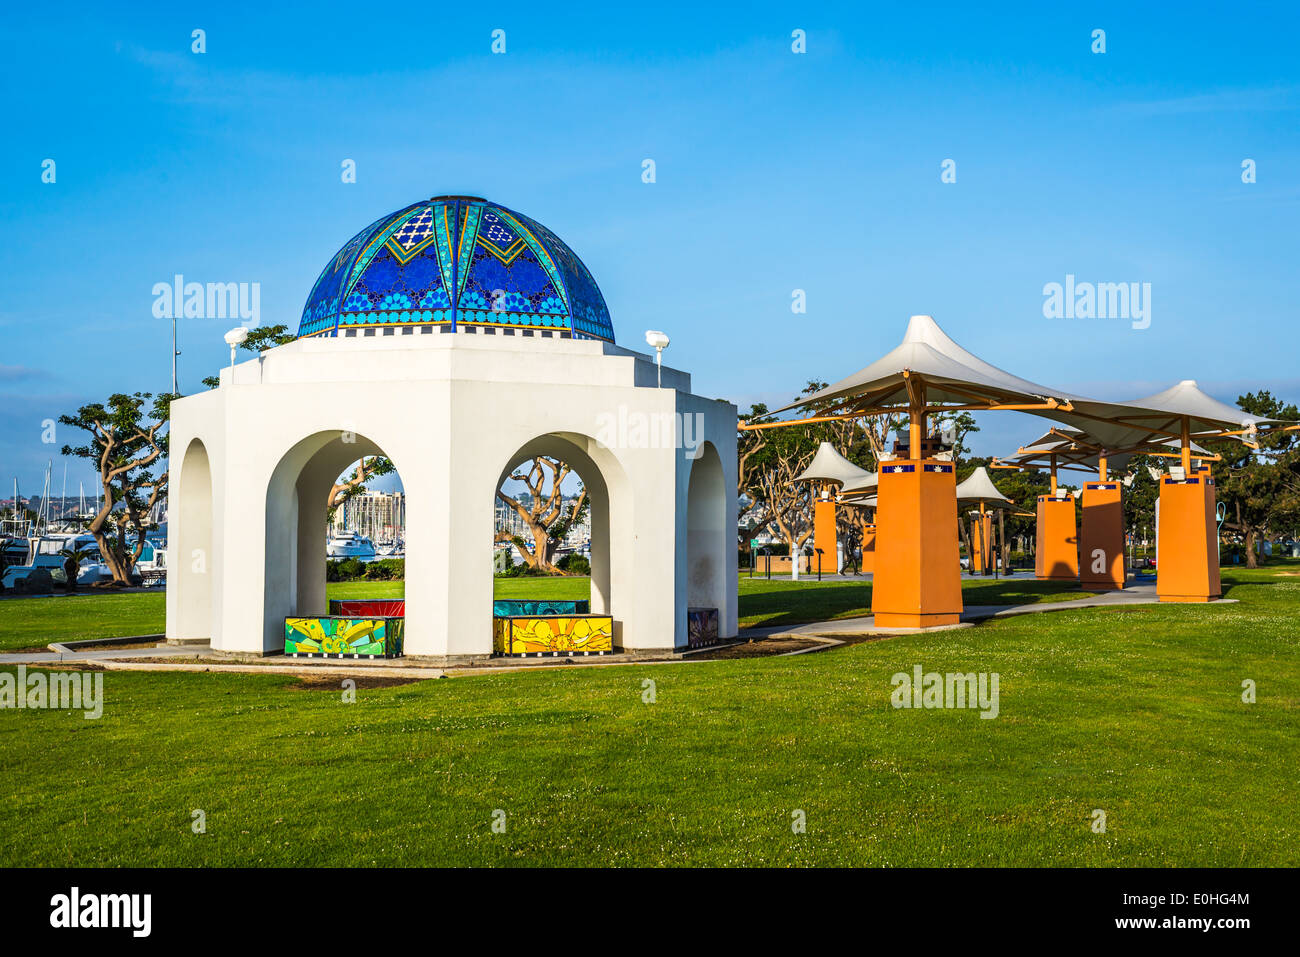 Kuppelbau im Krebs Überlebenden Park. San Diego, California, Vereinigte Staaten von Amerika. Stockfoto